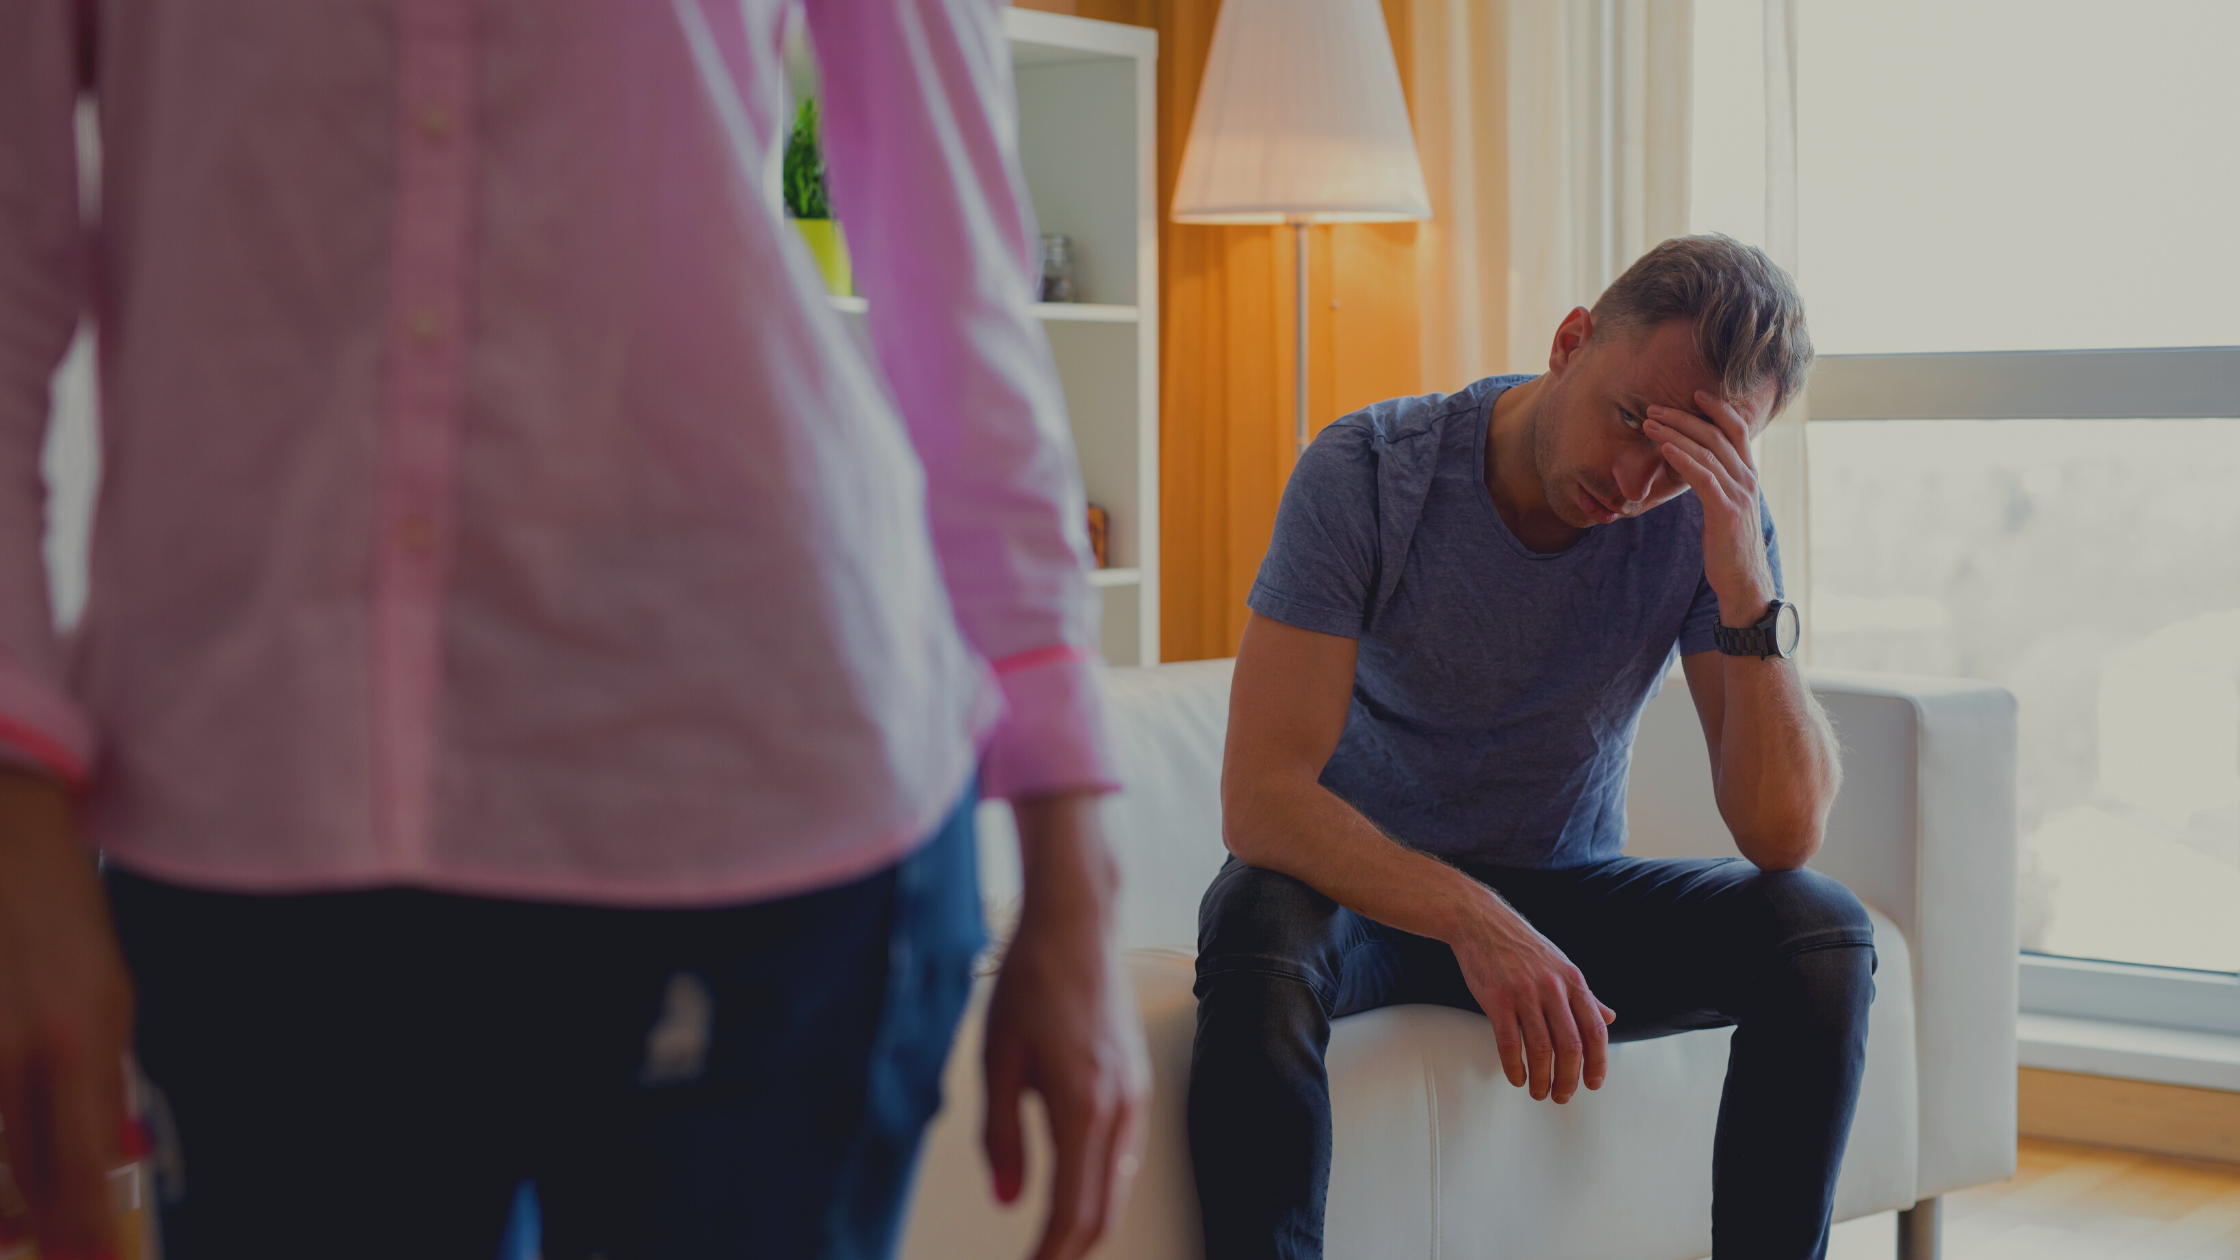 Männer nach der Trennung: Was fühlen und bereuen sie?